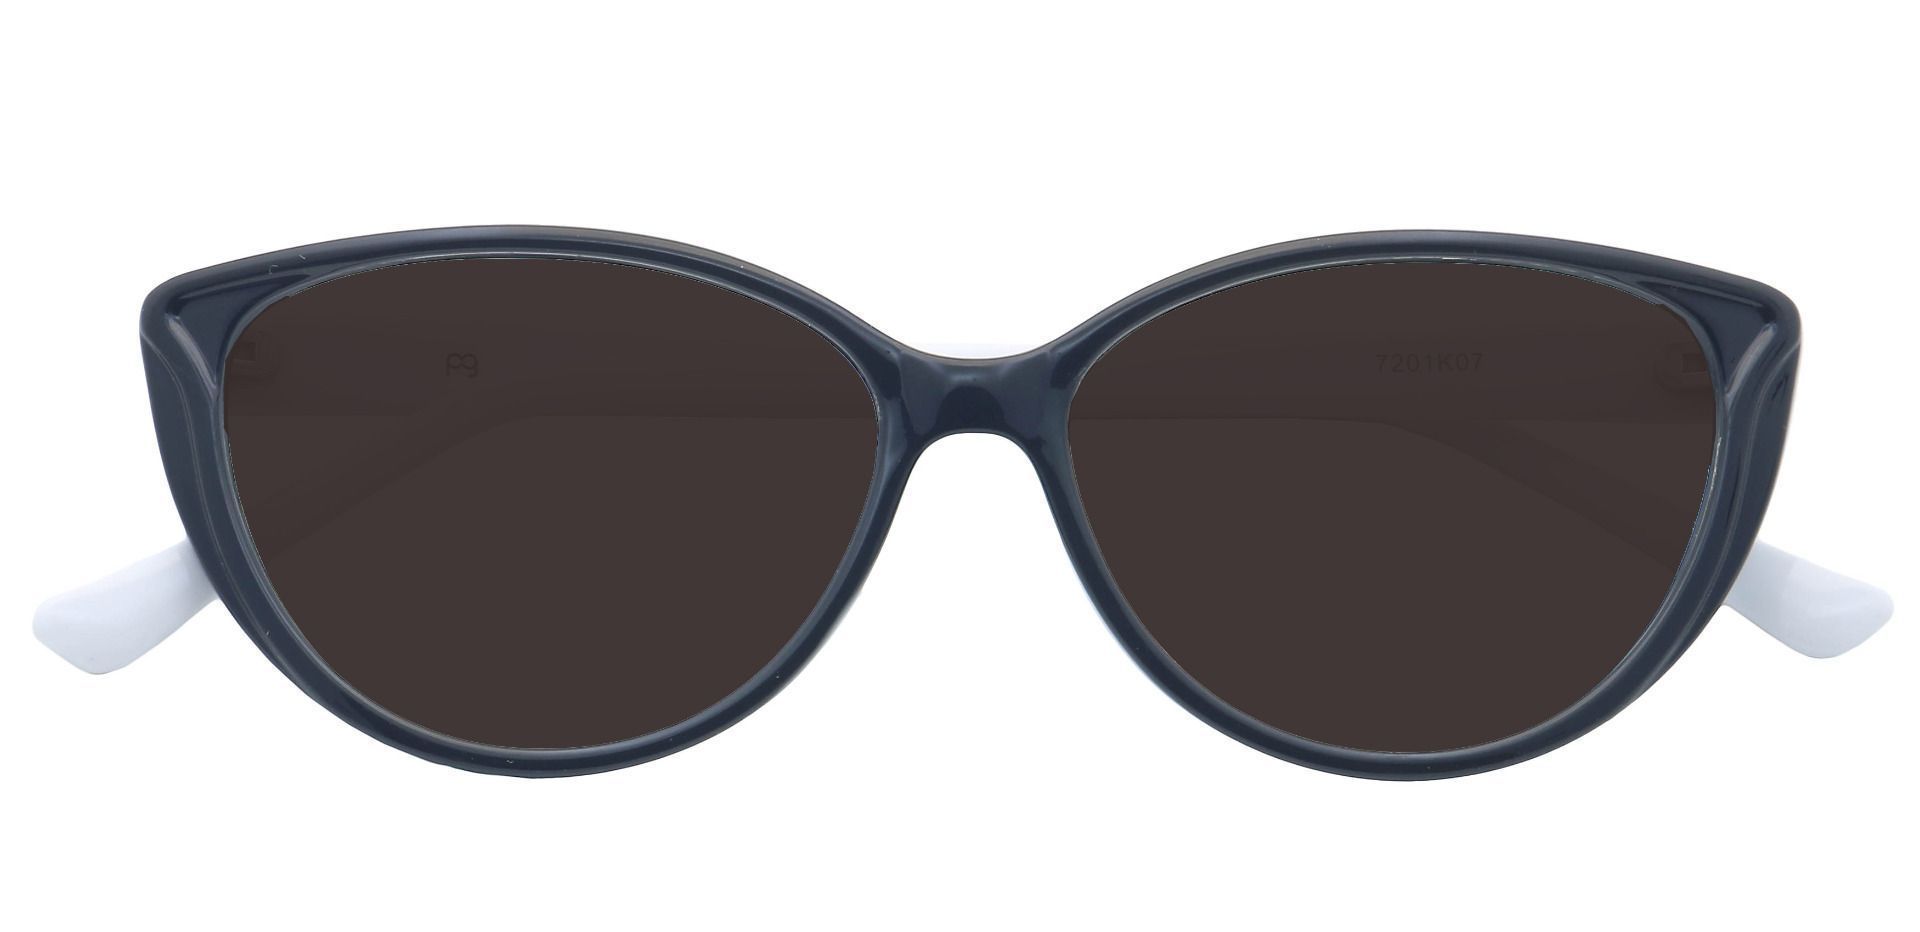 Amore Cat-Eye Prescription Sunglasses - Black Frame With Gray Lenses